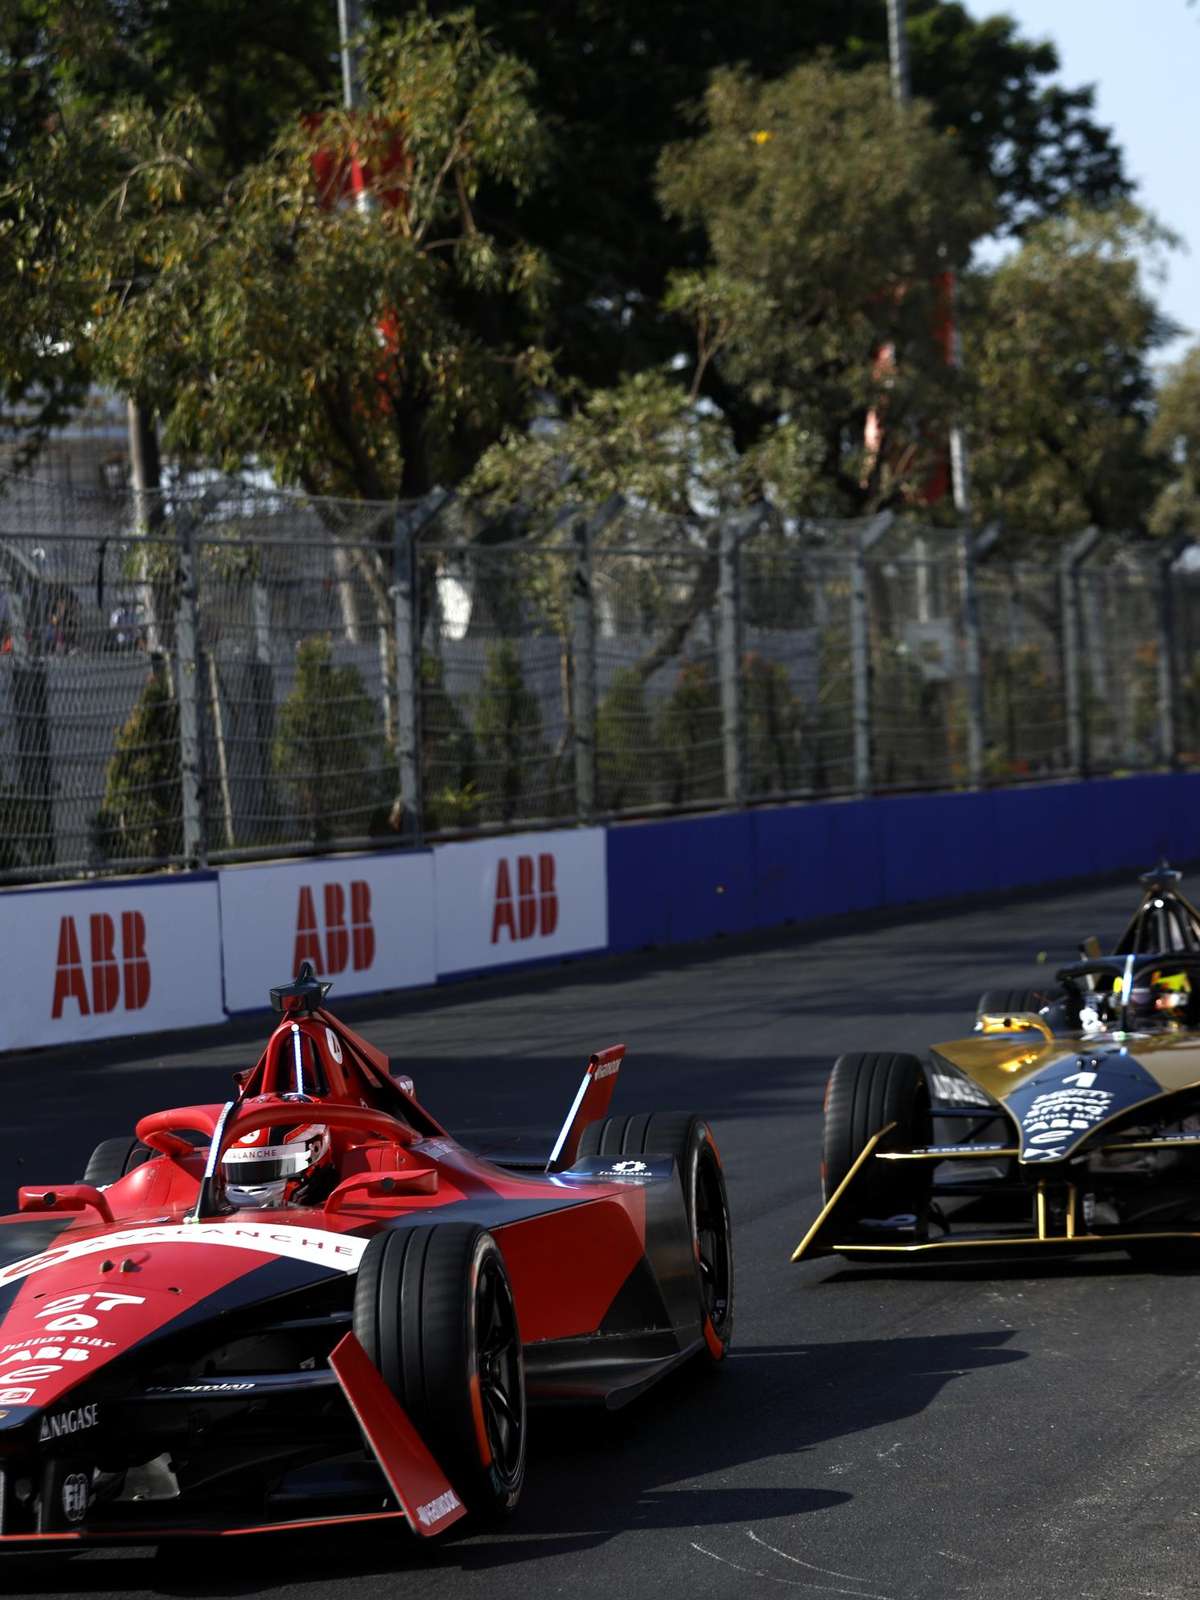 Fórmula E em SP:quase tudo pronto para corrida internacional de carros  elétricos